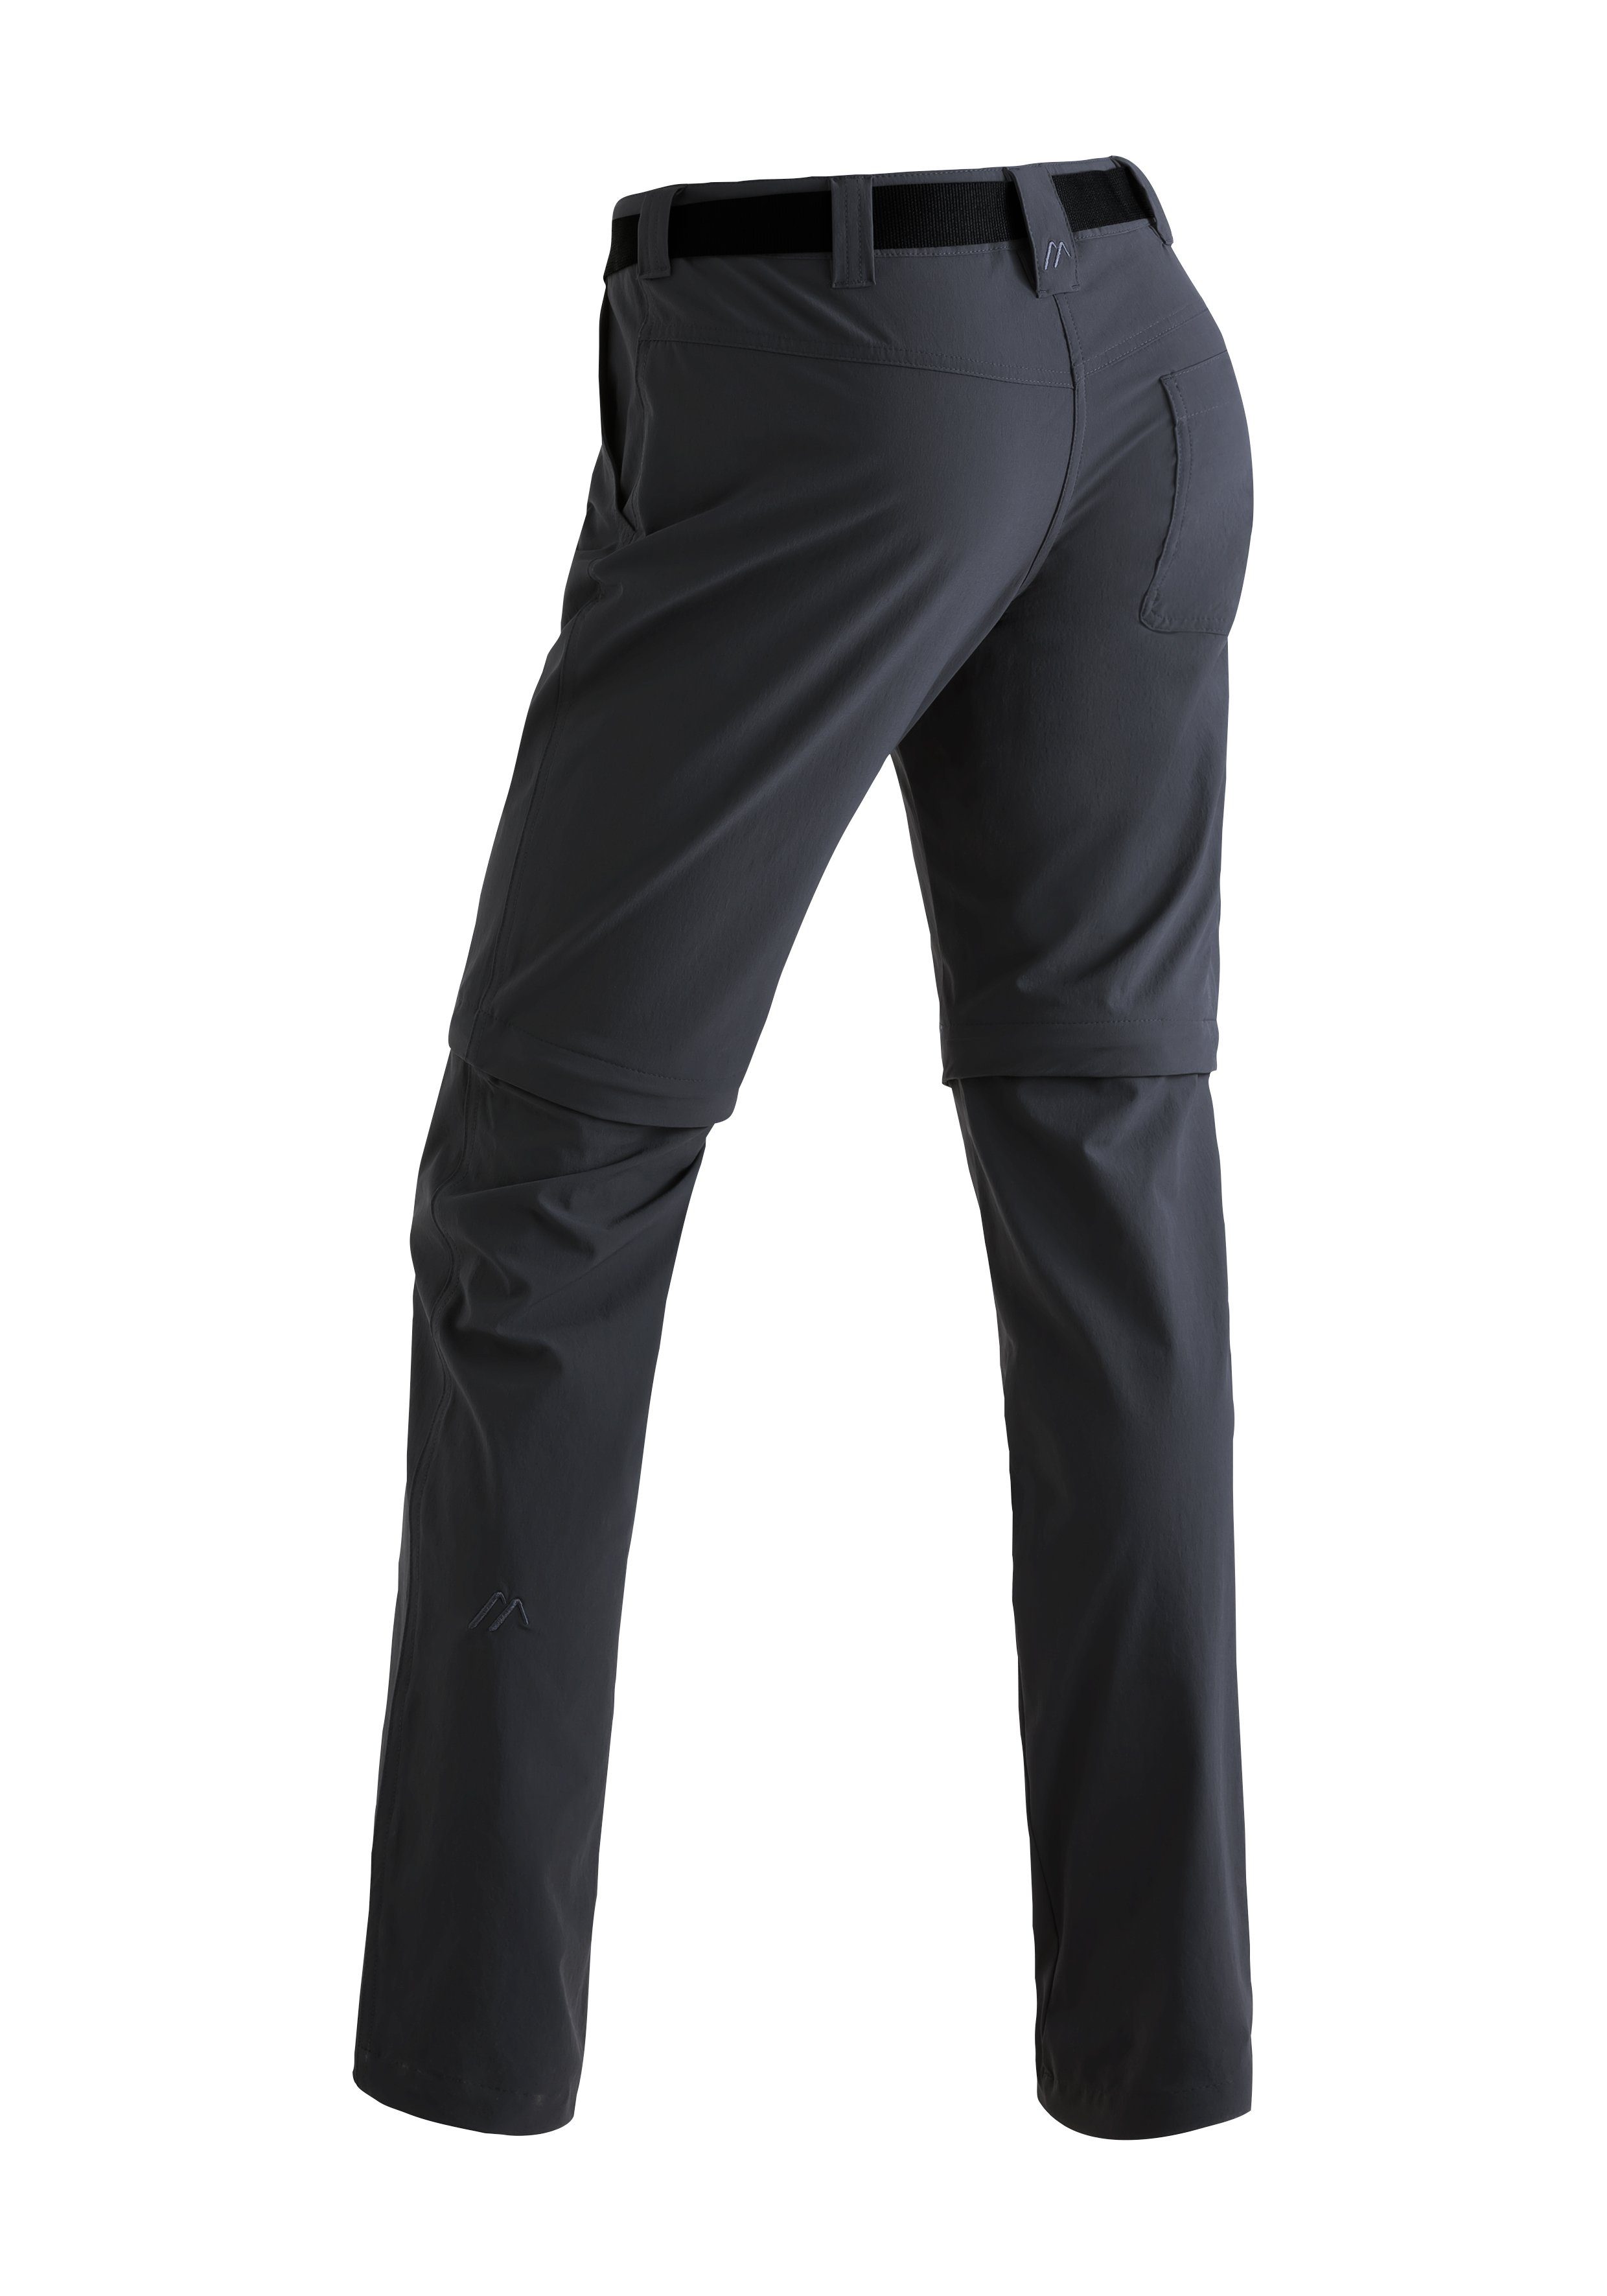 Maier Sports Funktionshose zip zipp-off schwarz Inara Outdoor-Hose Wanderhose, atmungsaktive Damen slim